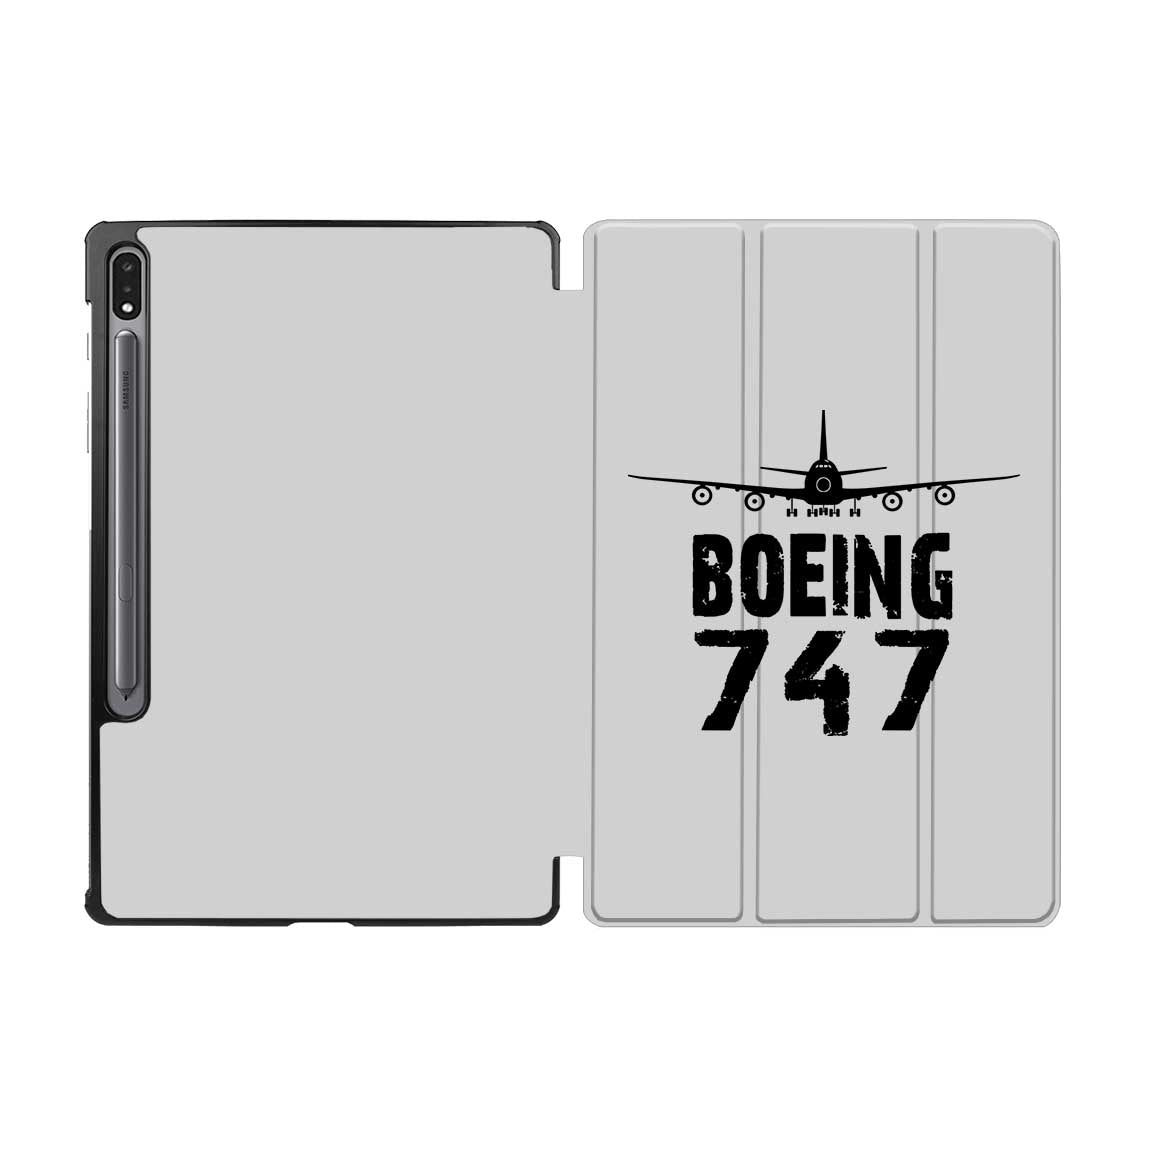 Boeing 747 & Plane Designed Samsung Tablet Cases